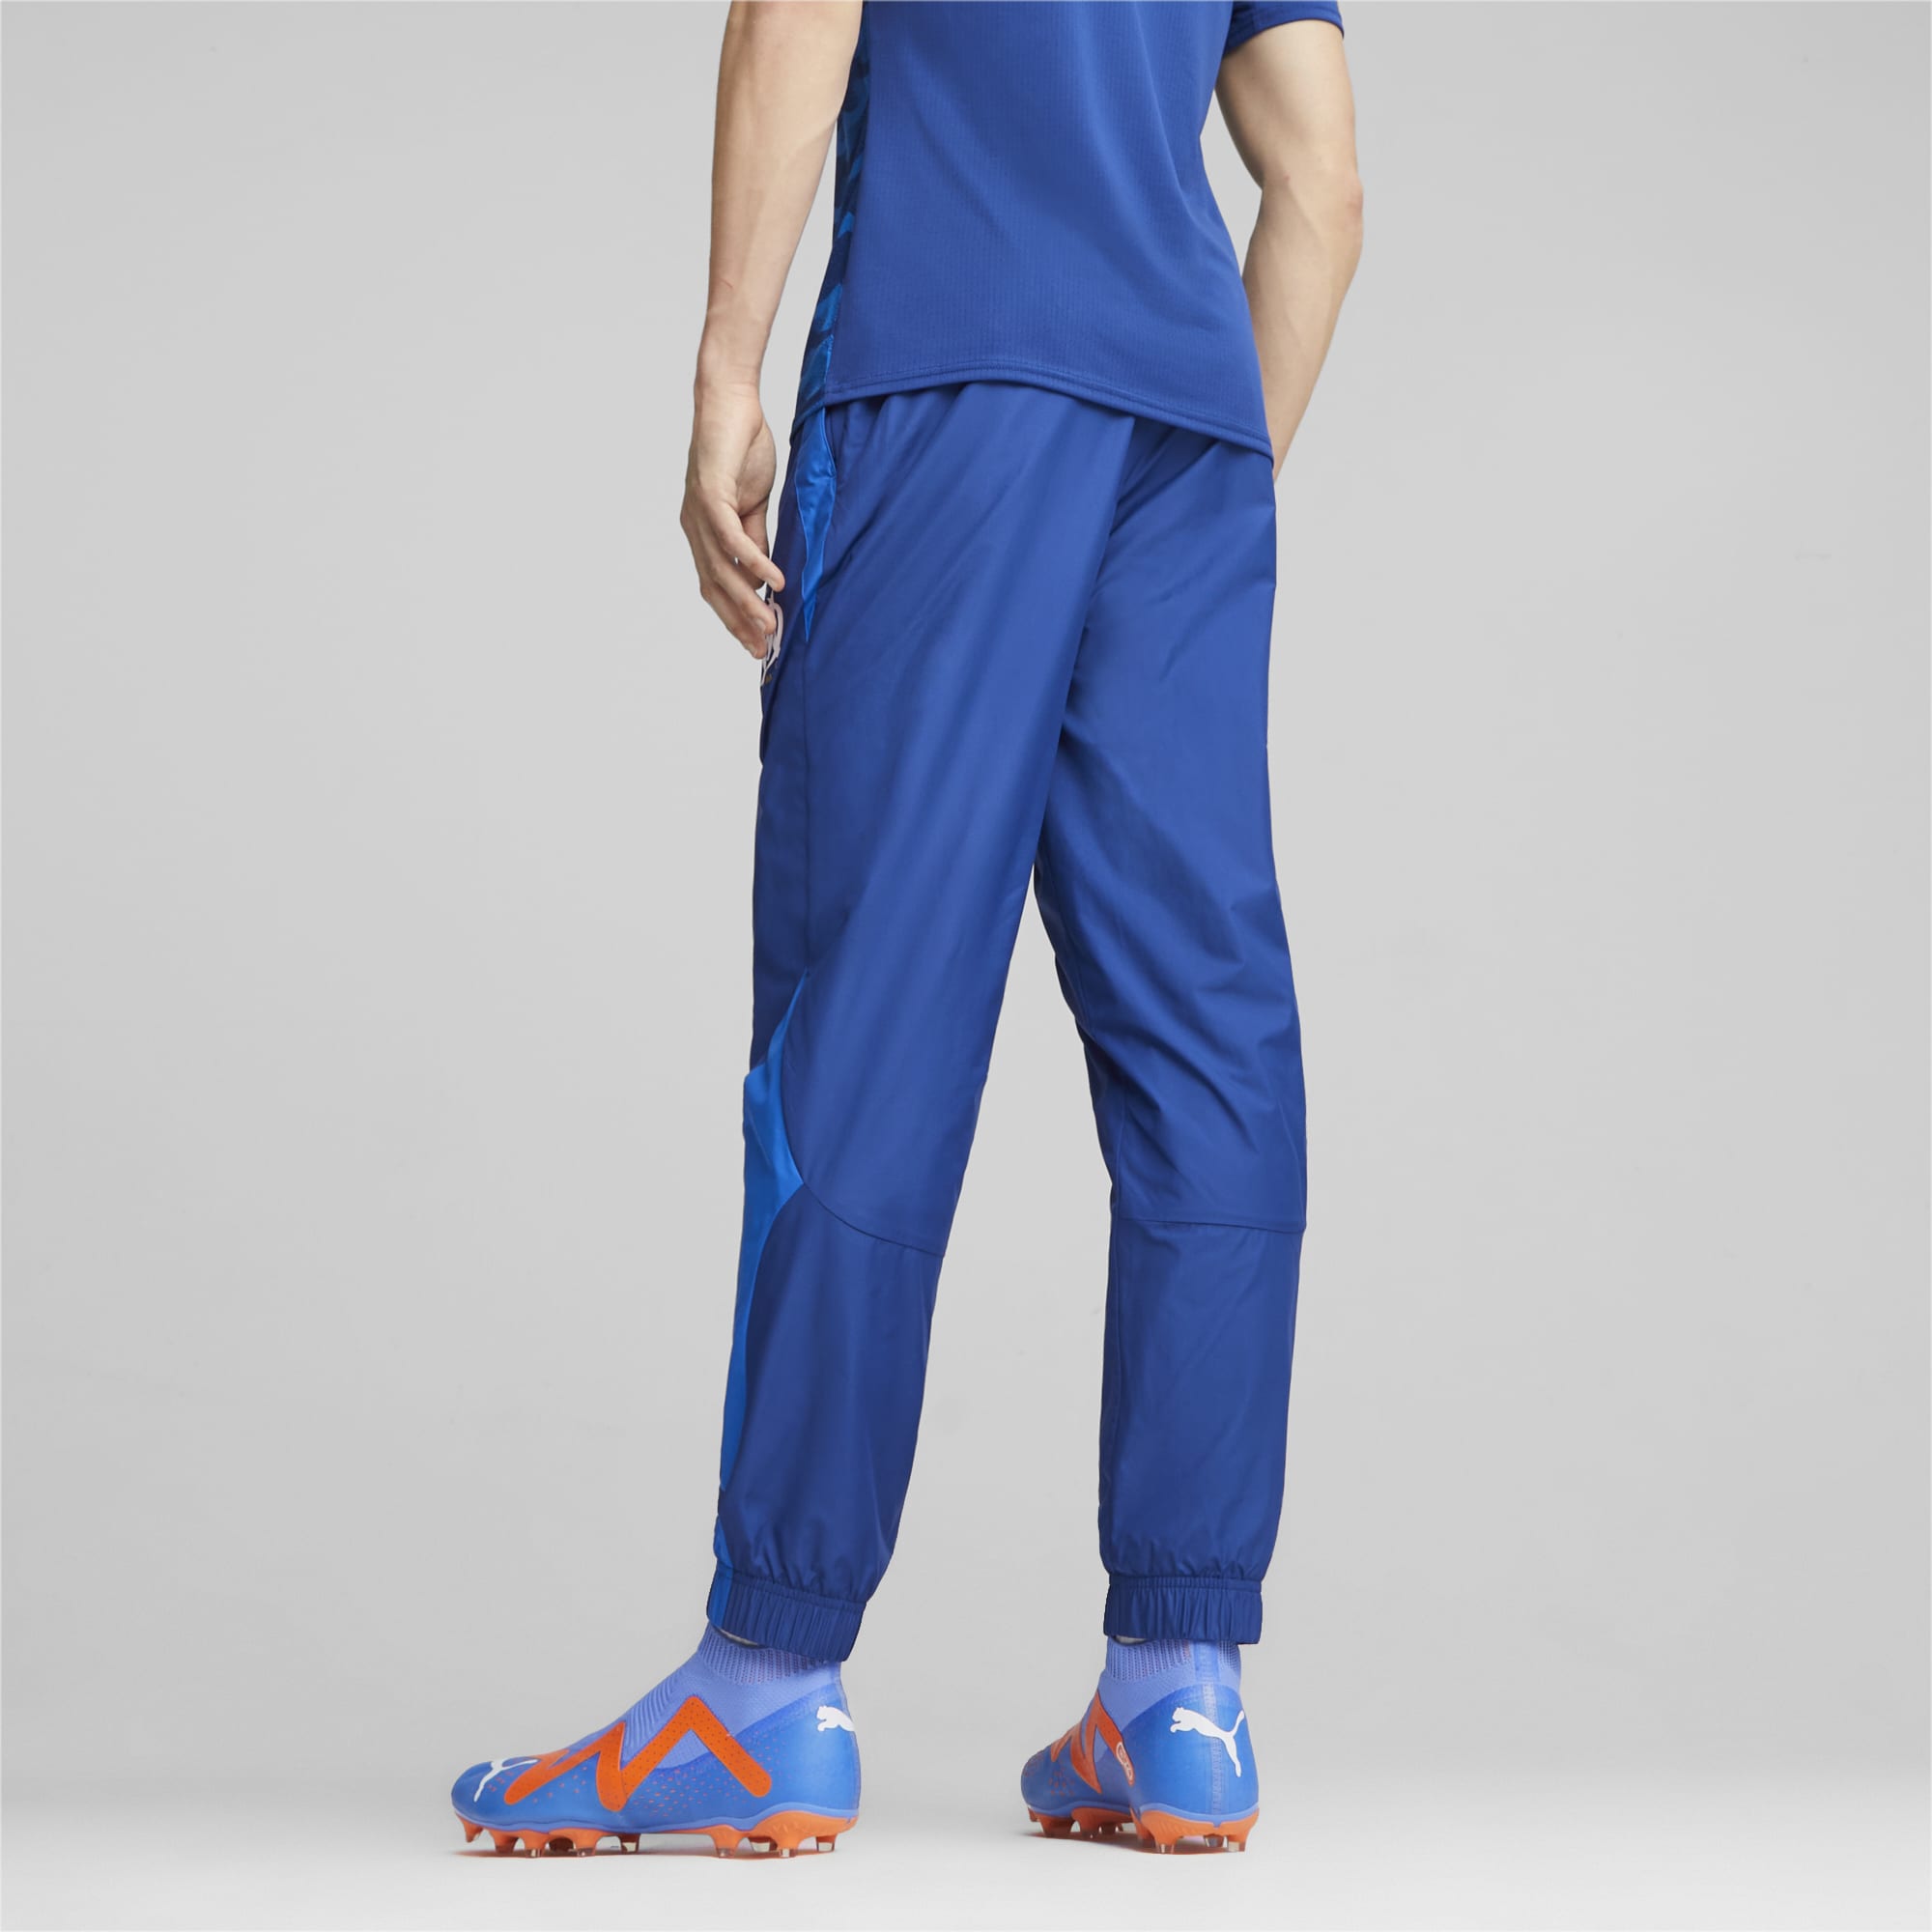 Men's PUMA Olympique De Marseille Prematch Football Pants, Royal Blue, Size L, Clothing